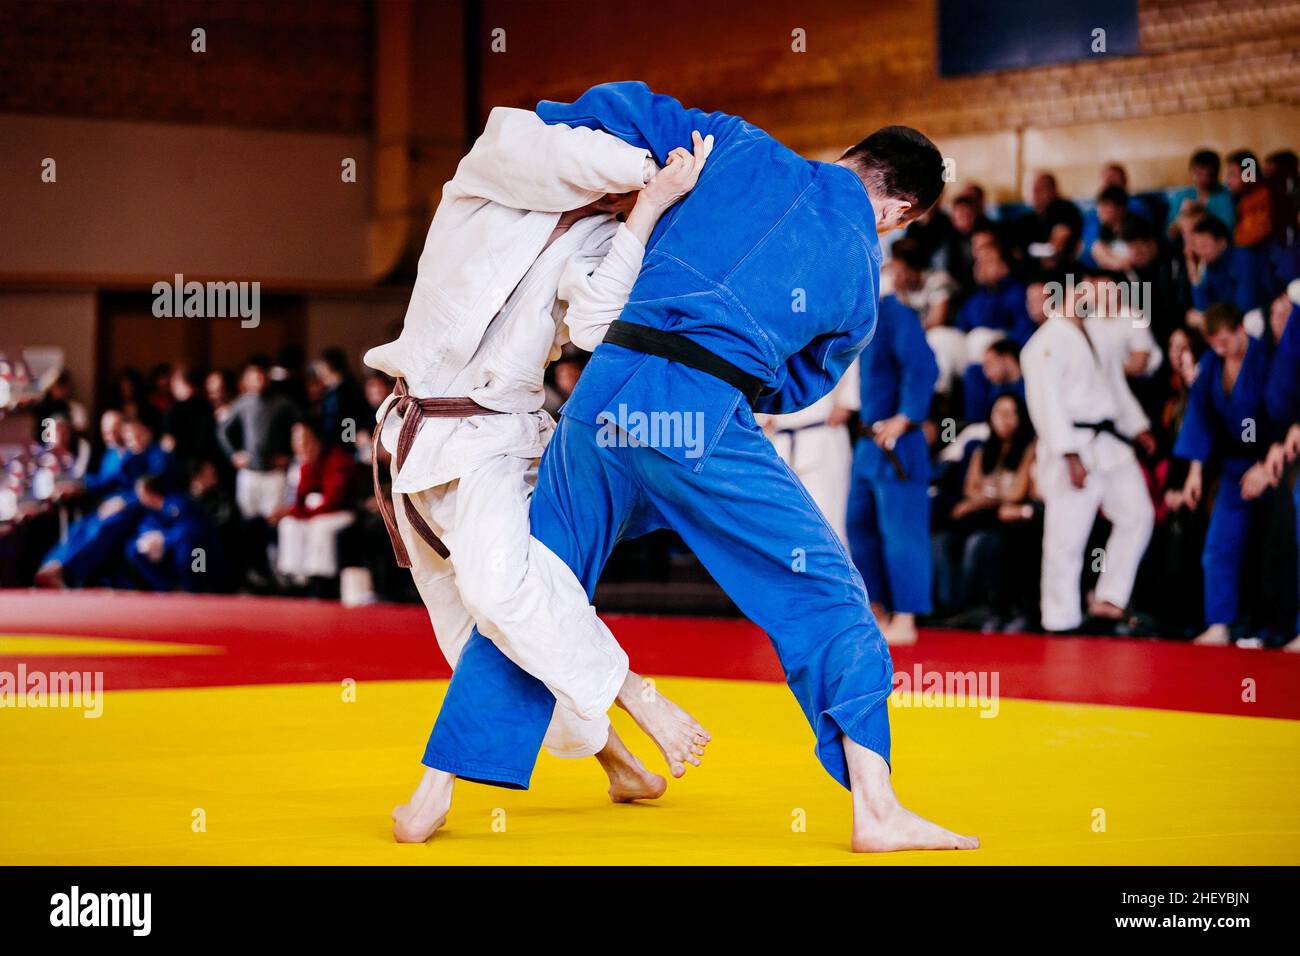 judo luchadores en tatami lucha en la competencia de judo Foto de stock